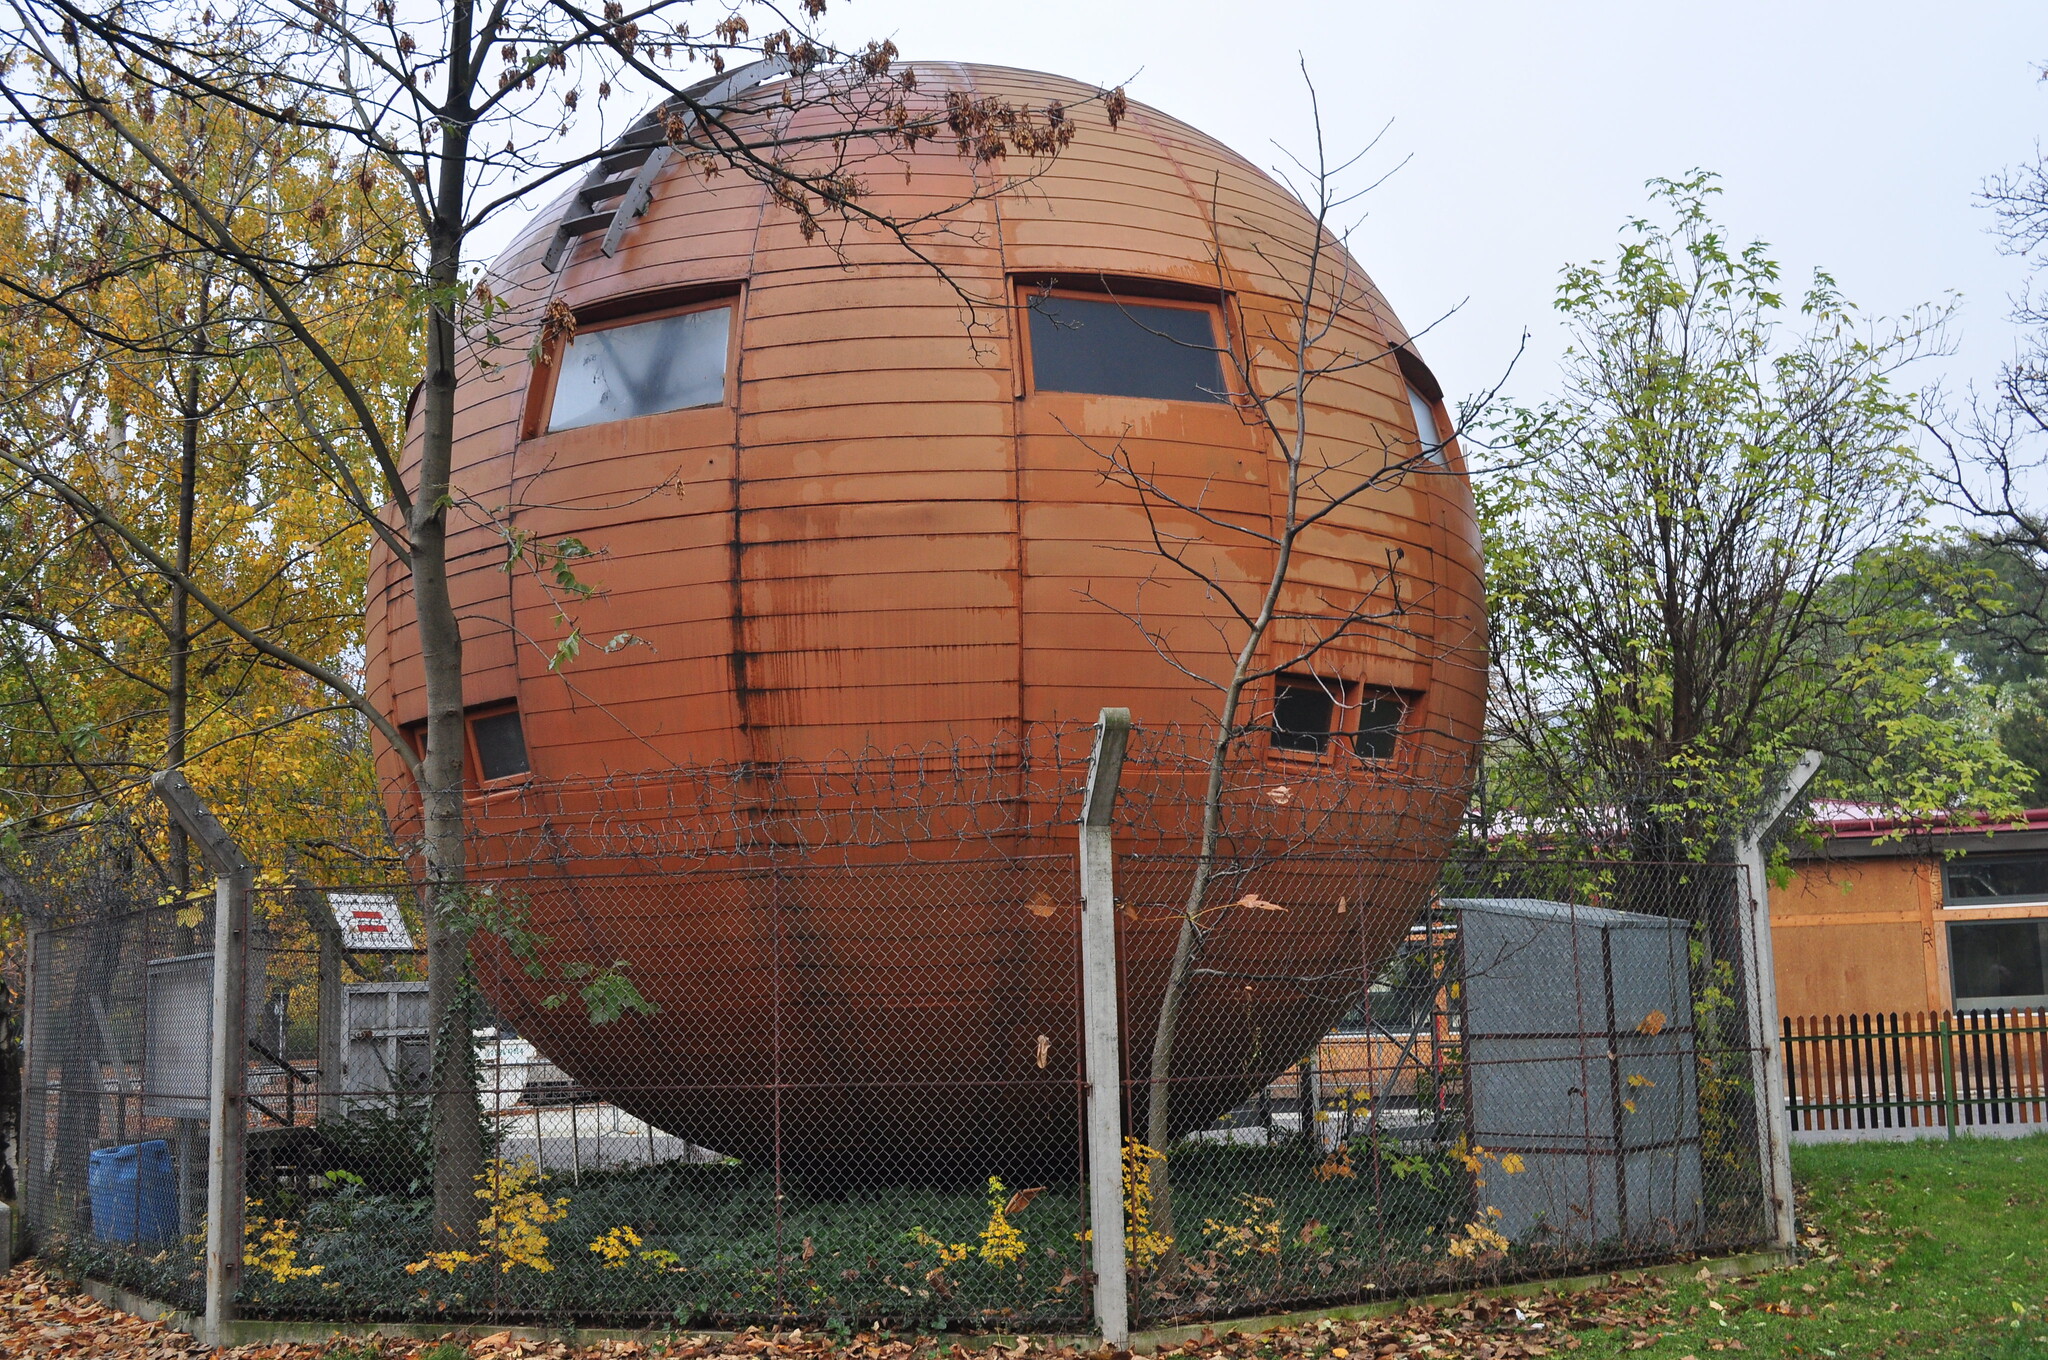 Фото округлое. Круглый домик. Дом в форме шара. Круглые дома. Сферические домики.